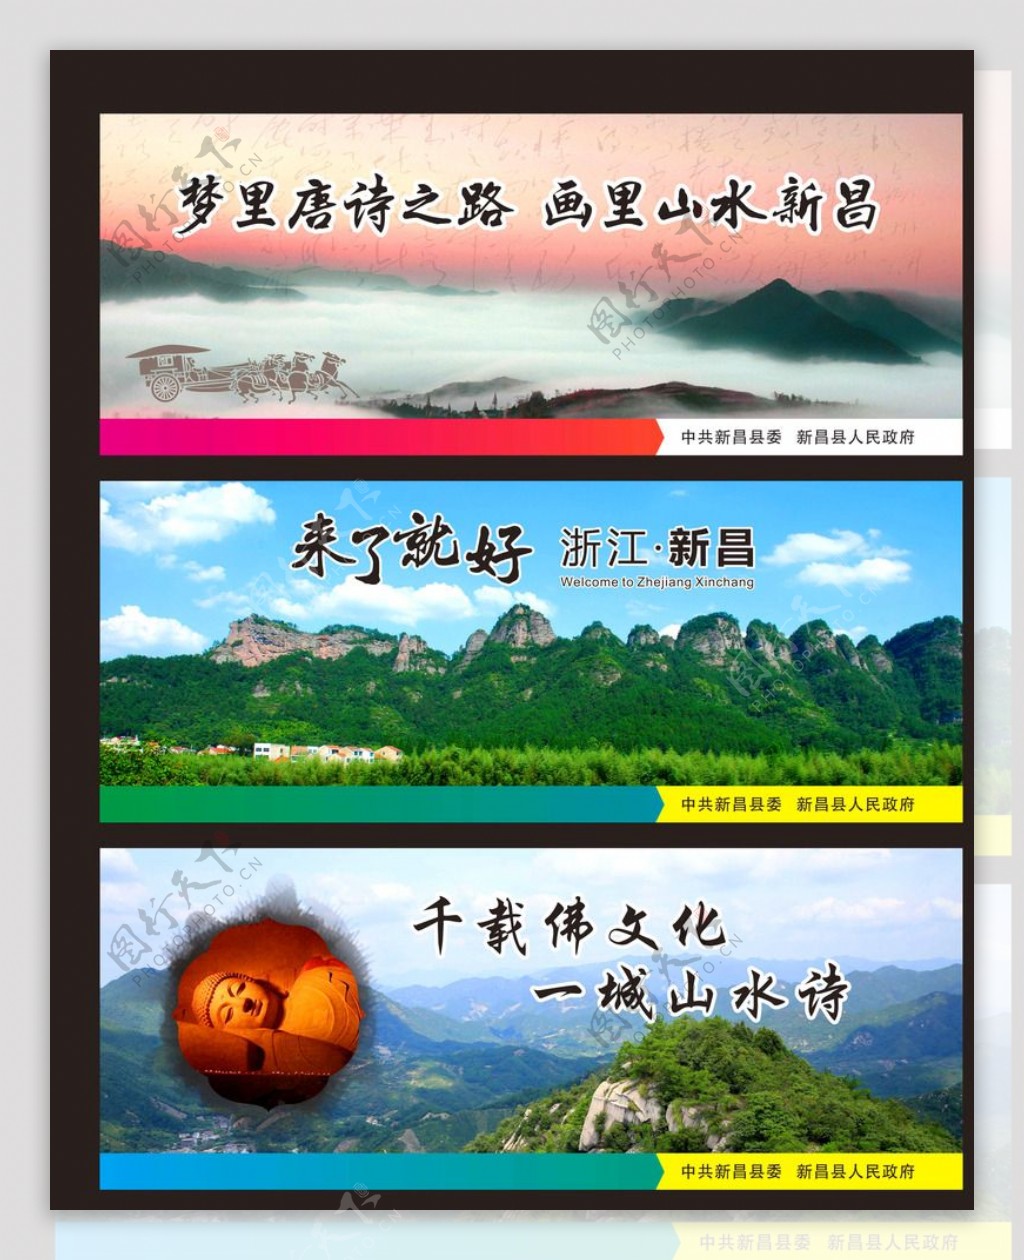 新昌旅游宣传画面图片